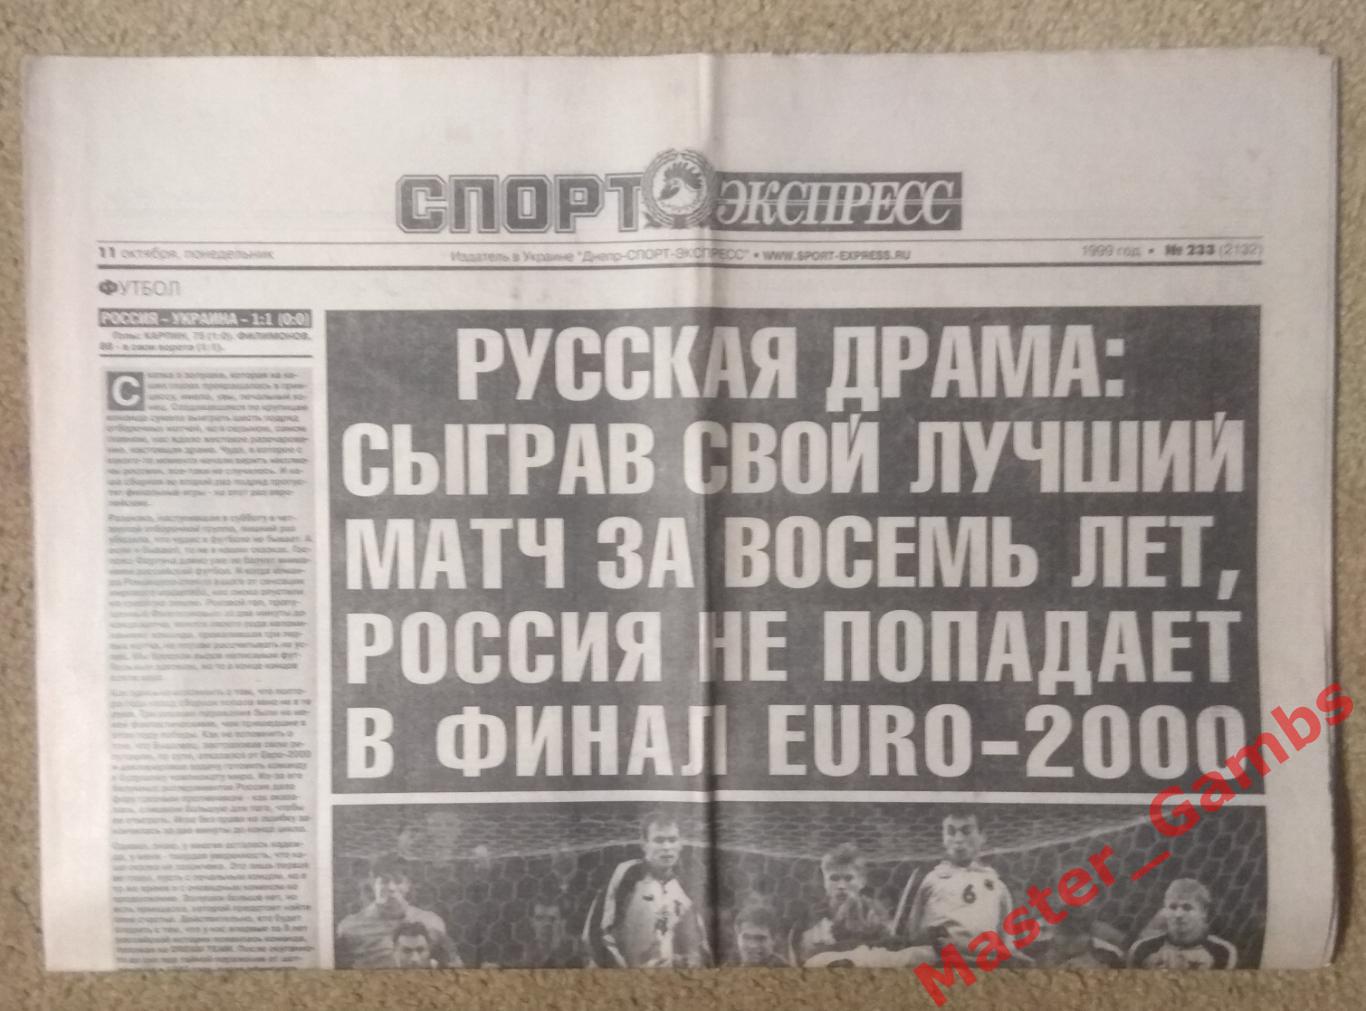 Газета спорт экспресс #233 от 11 октября 1999 / россия - Украина